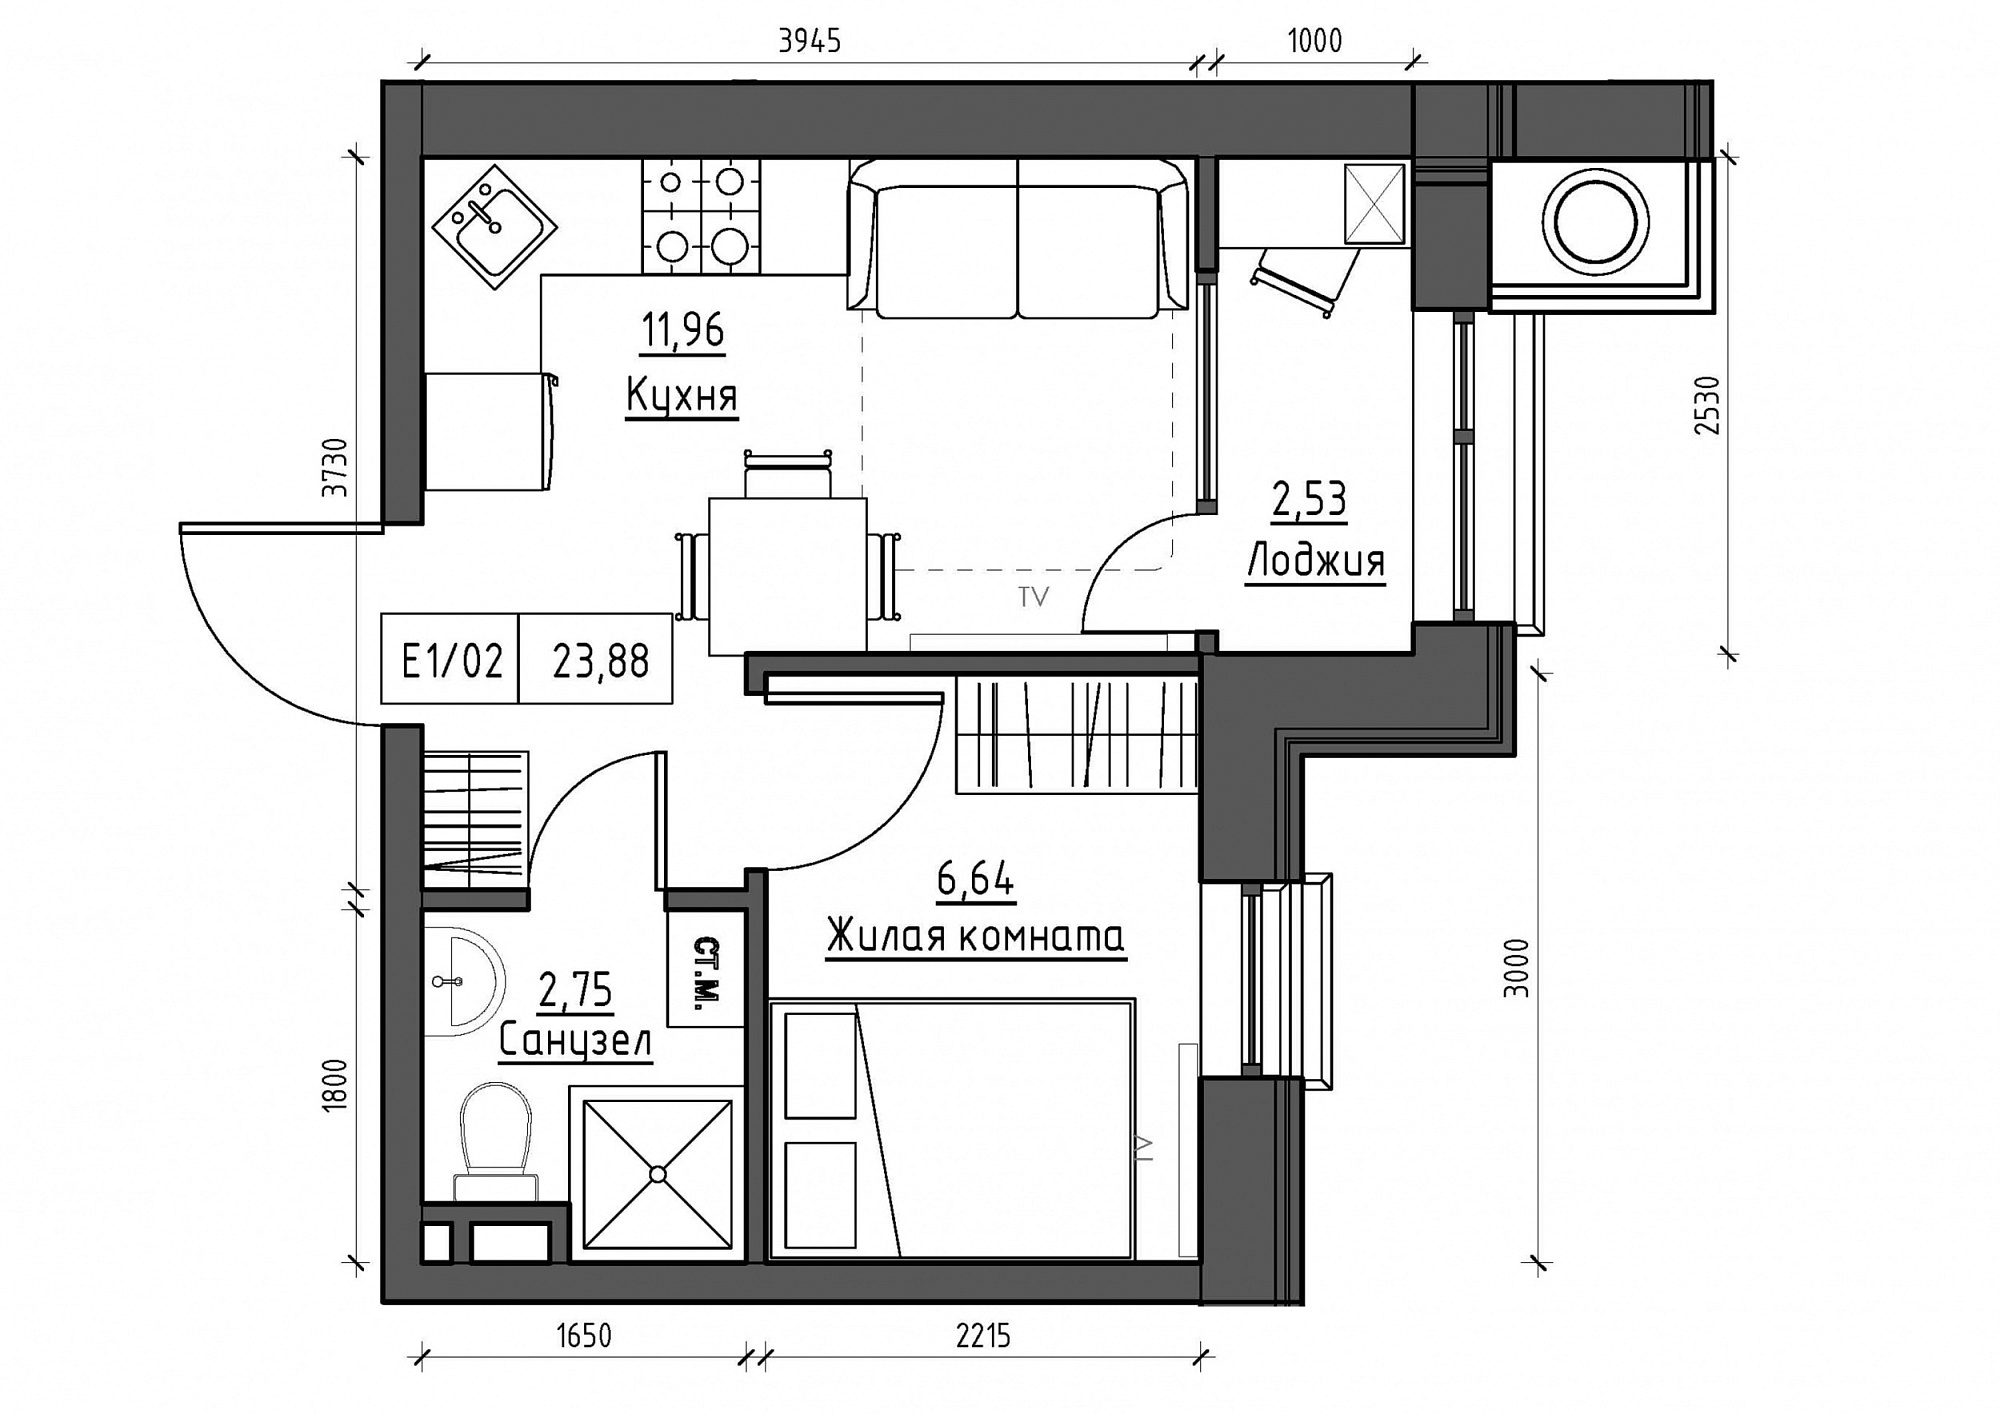 Планировка 1-к квартира площей 23.88м2, KS-012-05/0018.